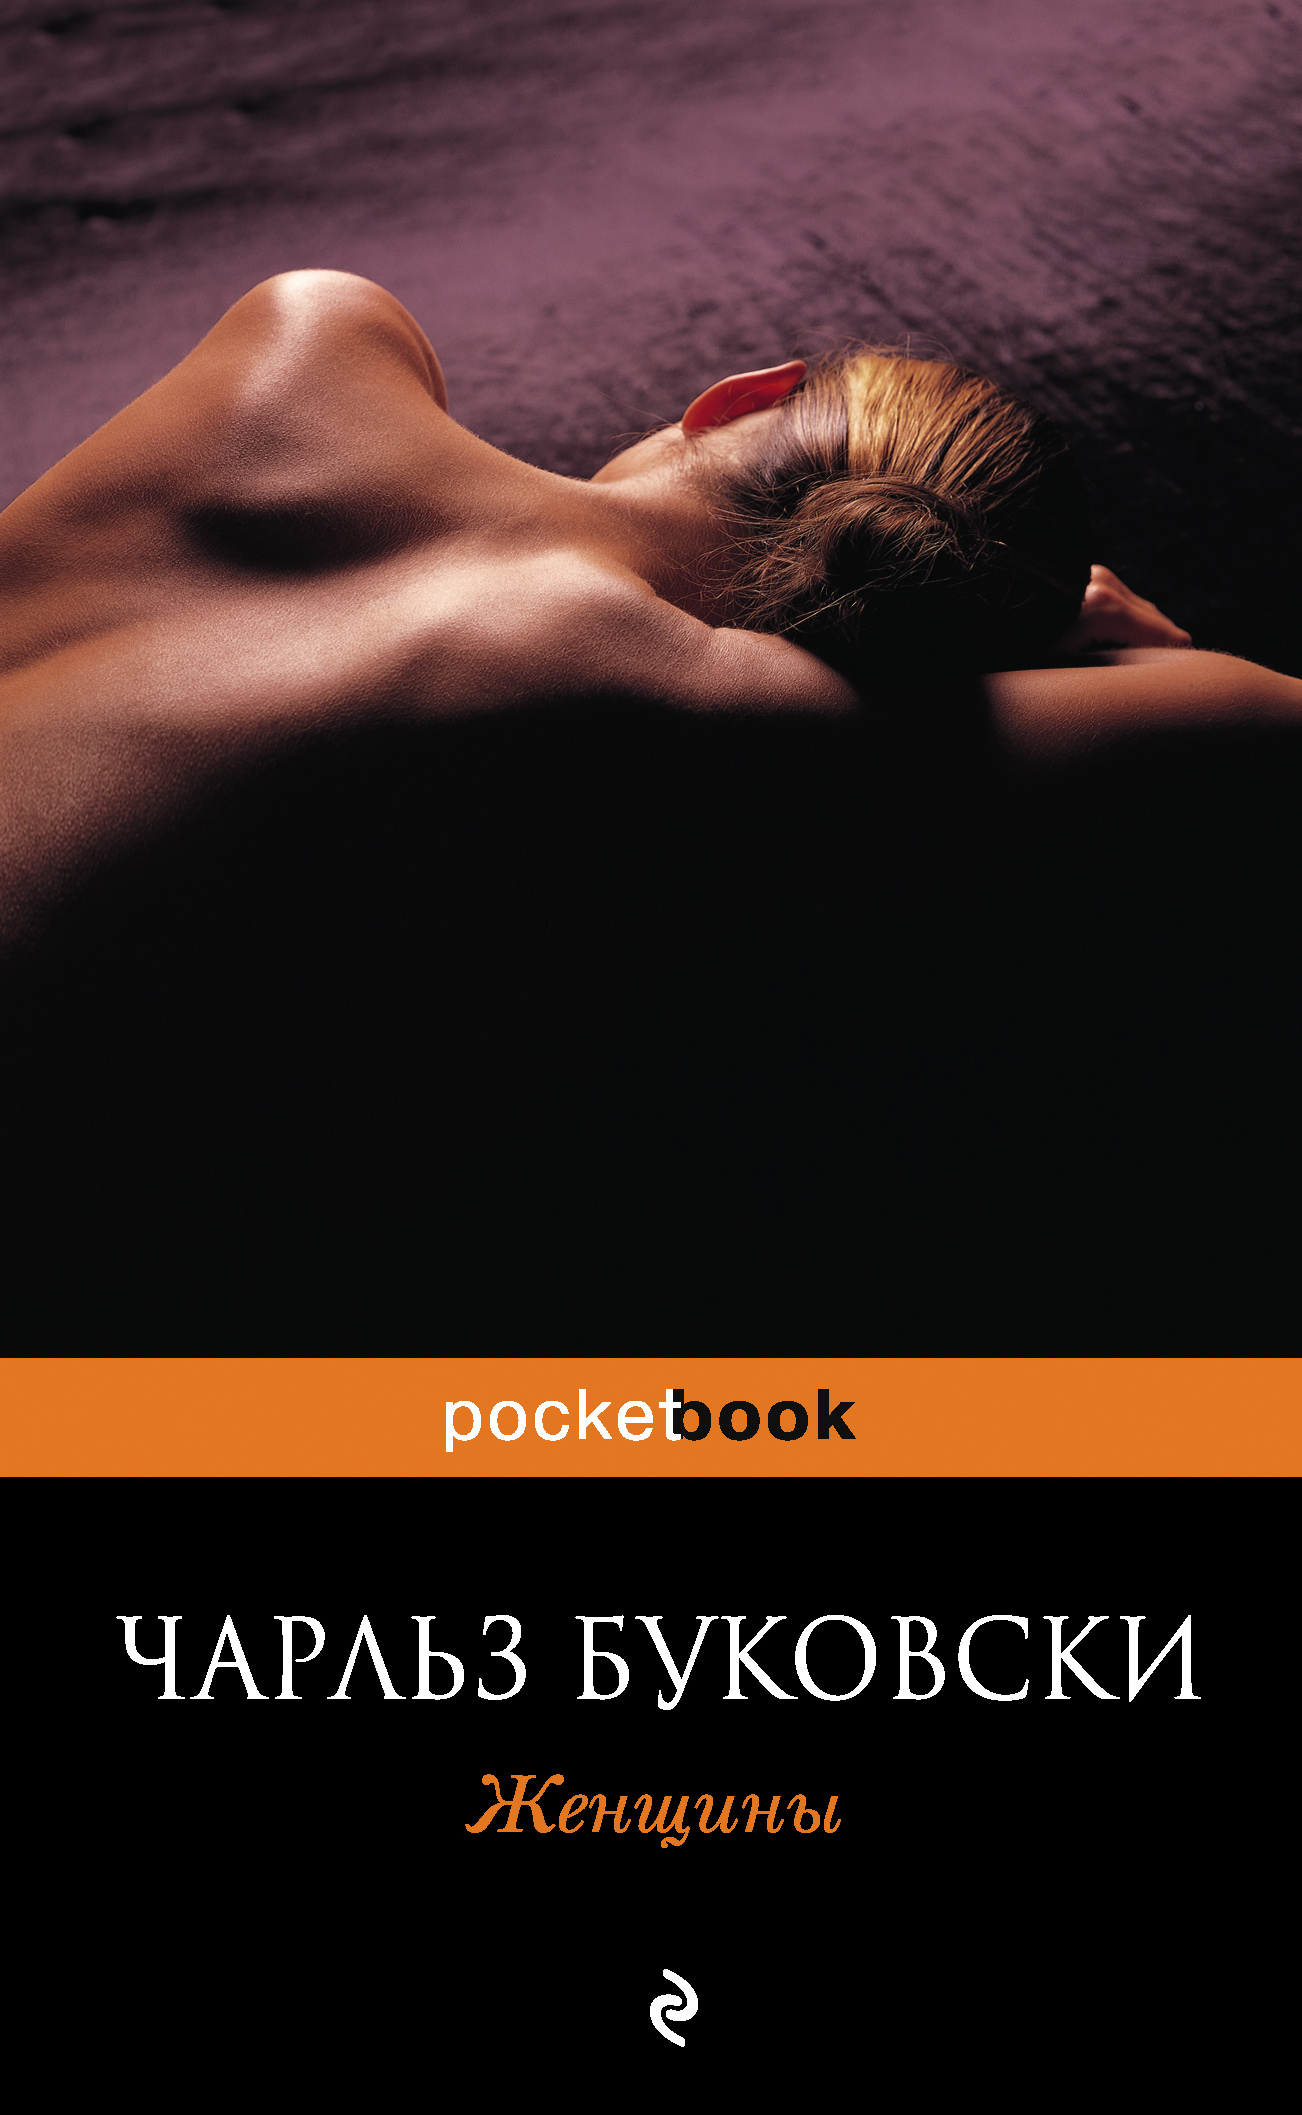 Книга Женщины из серии , созданная Чарльз Буковски, может относится к жанру Эротическая литература, Зарубежные любовные романы. Стоимость электронной книги Женщины с идентификатором 165296 составляет 149.00 руб.